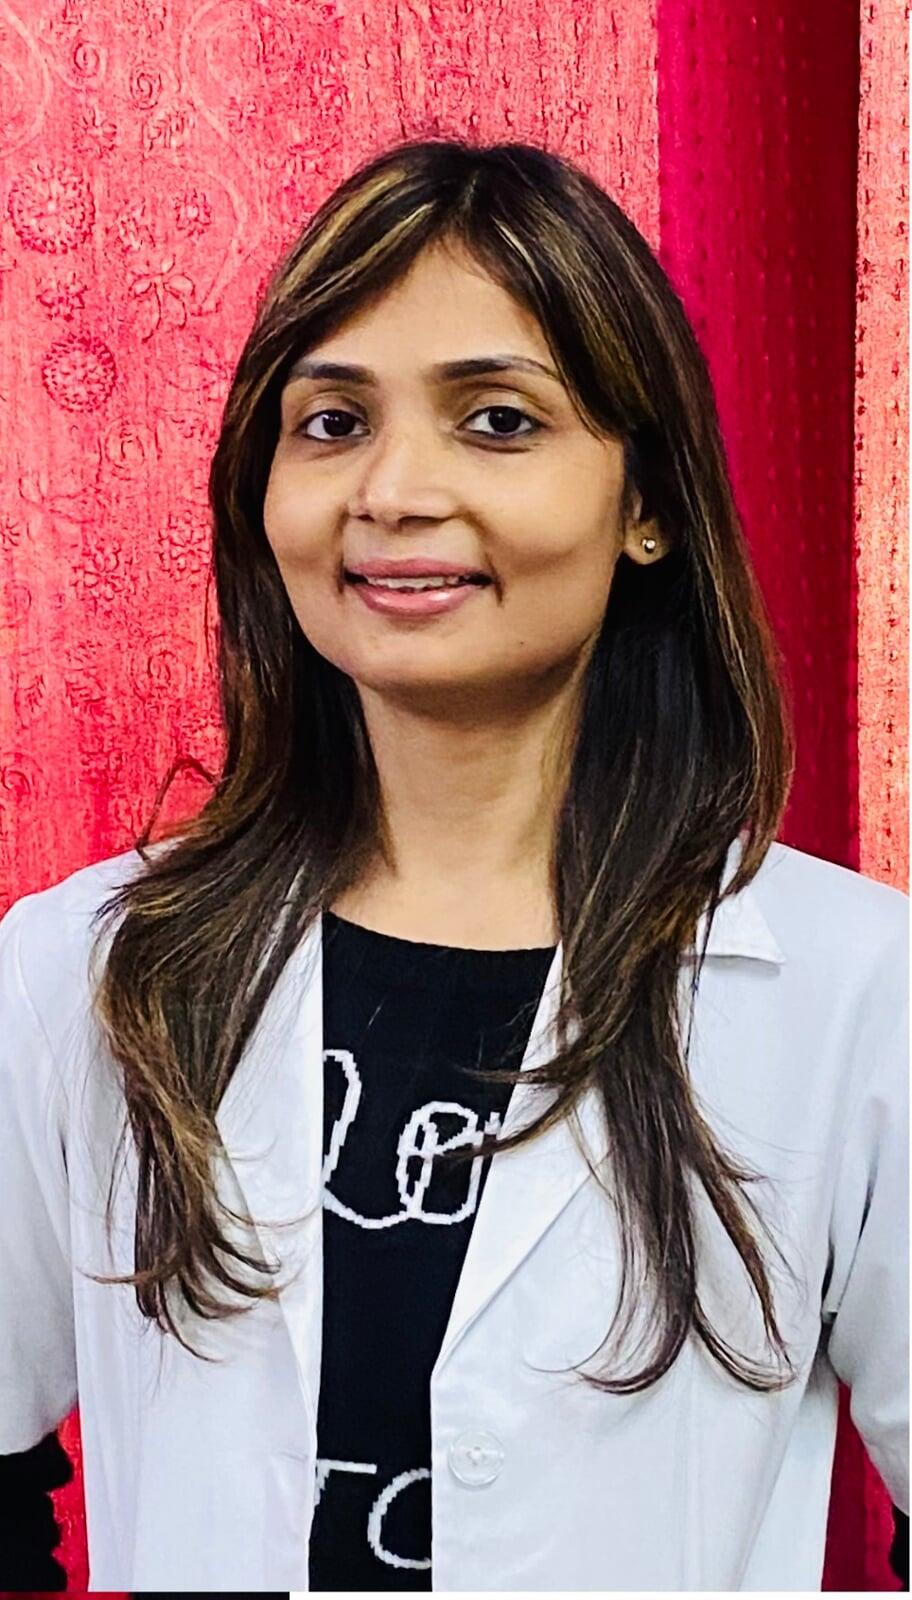 Dr. Amrita Puri